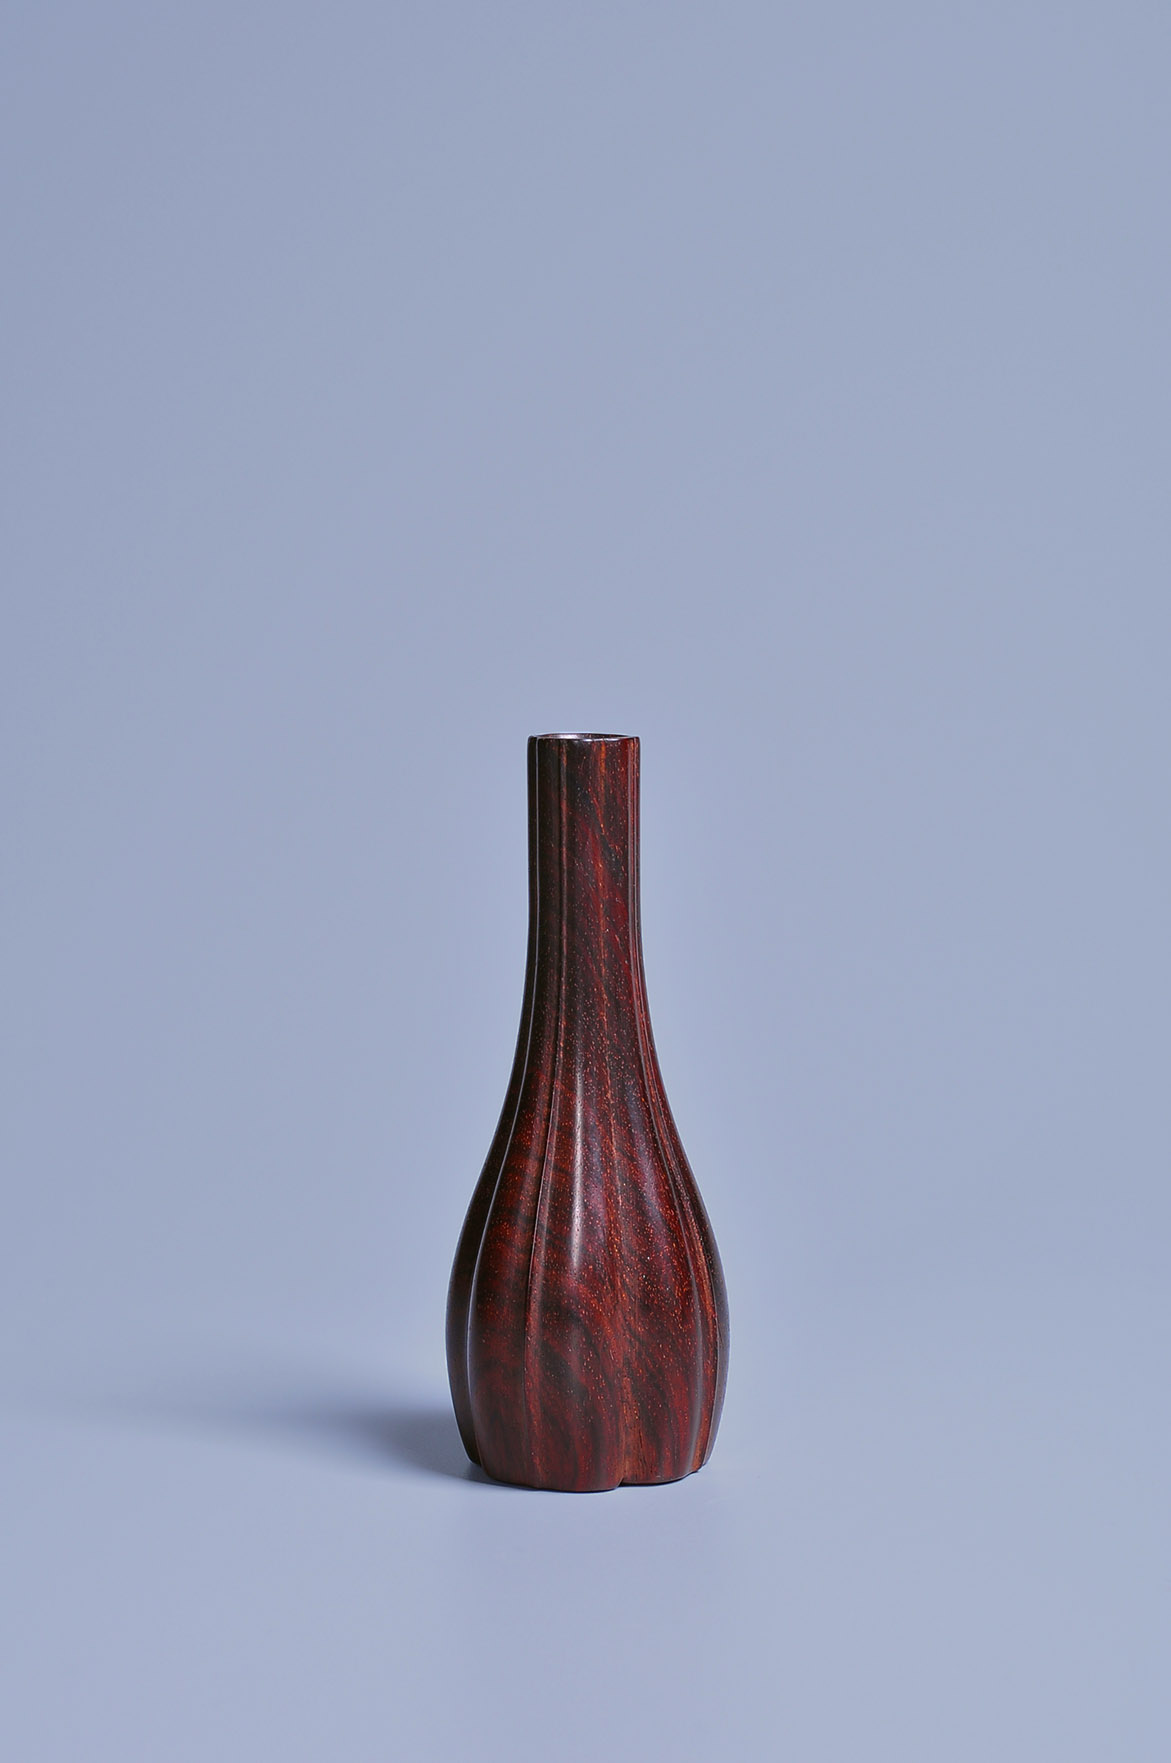 紫檀葵形箸瓶 - 紫檀 箸瓶 香具 香道具